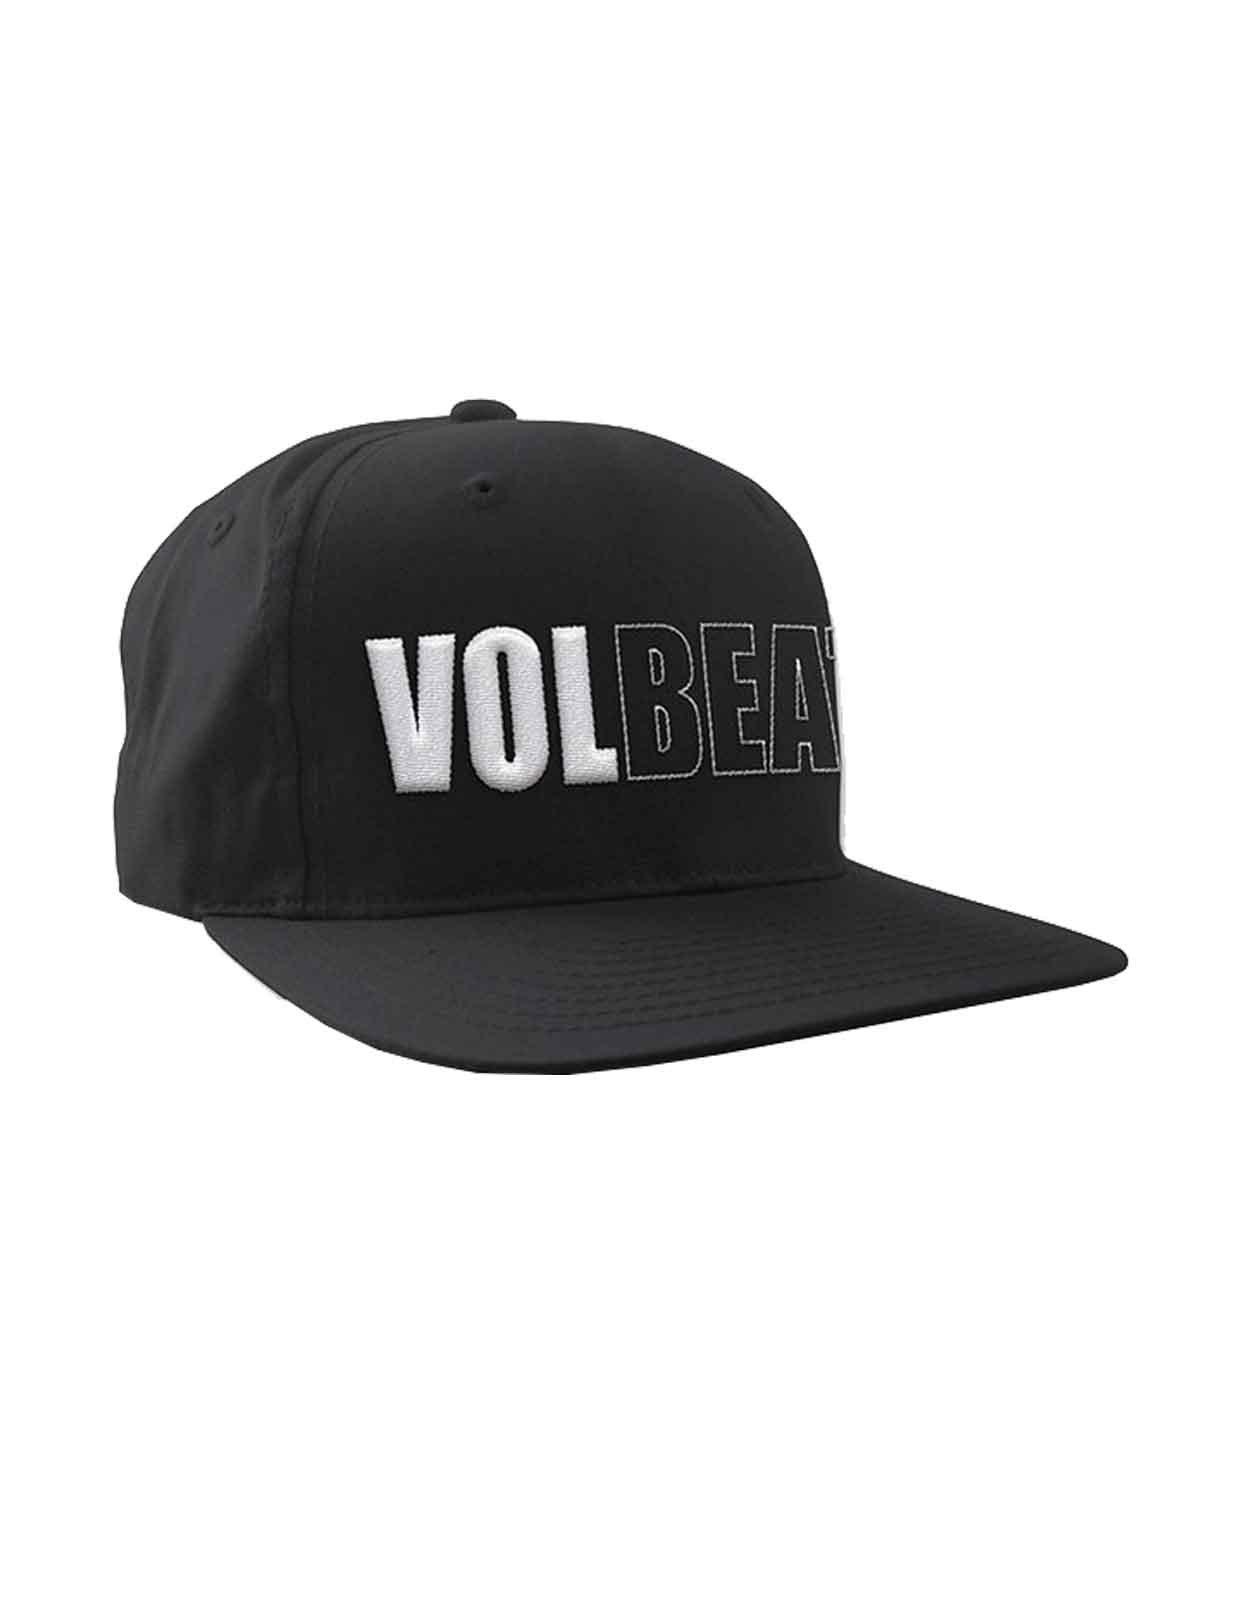 бейсбольная кепка snapback с логотипом q band queen черный Бейсбольная кепка Snapback с объемным логотипом Band Volbeat, черный